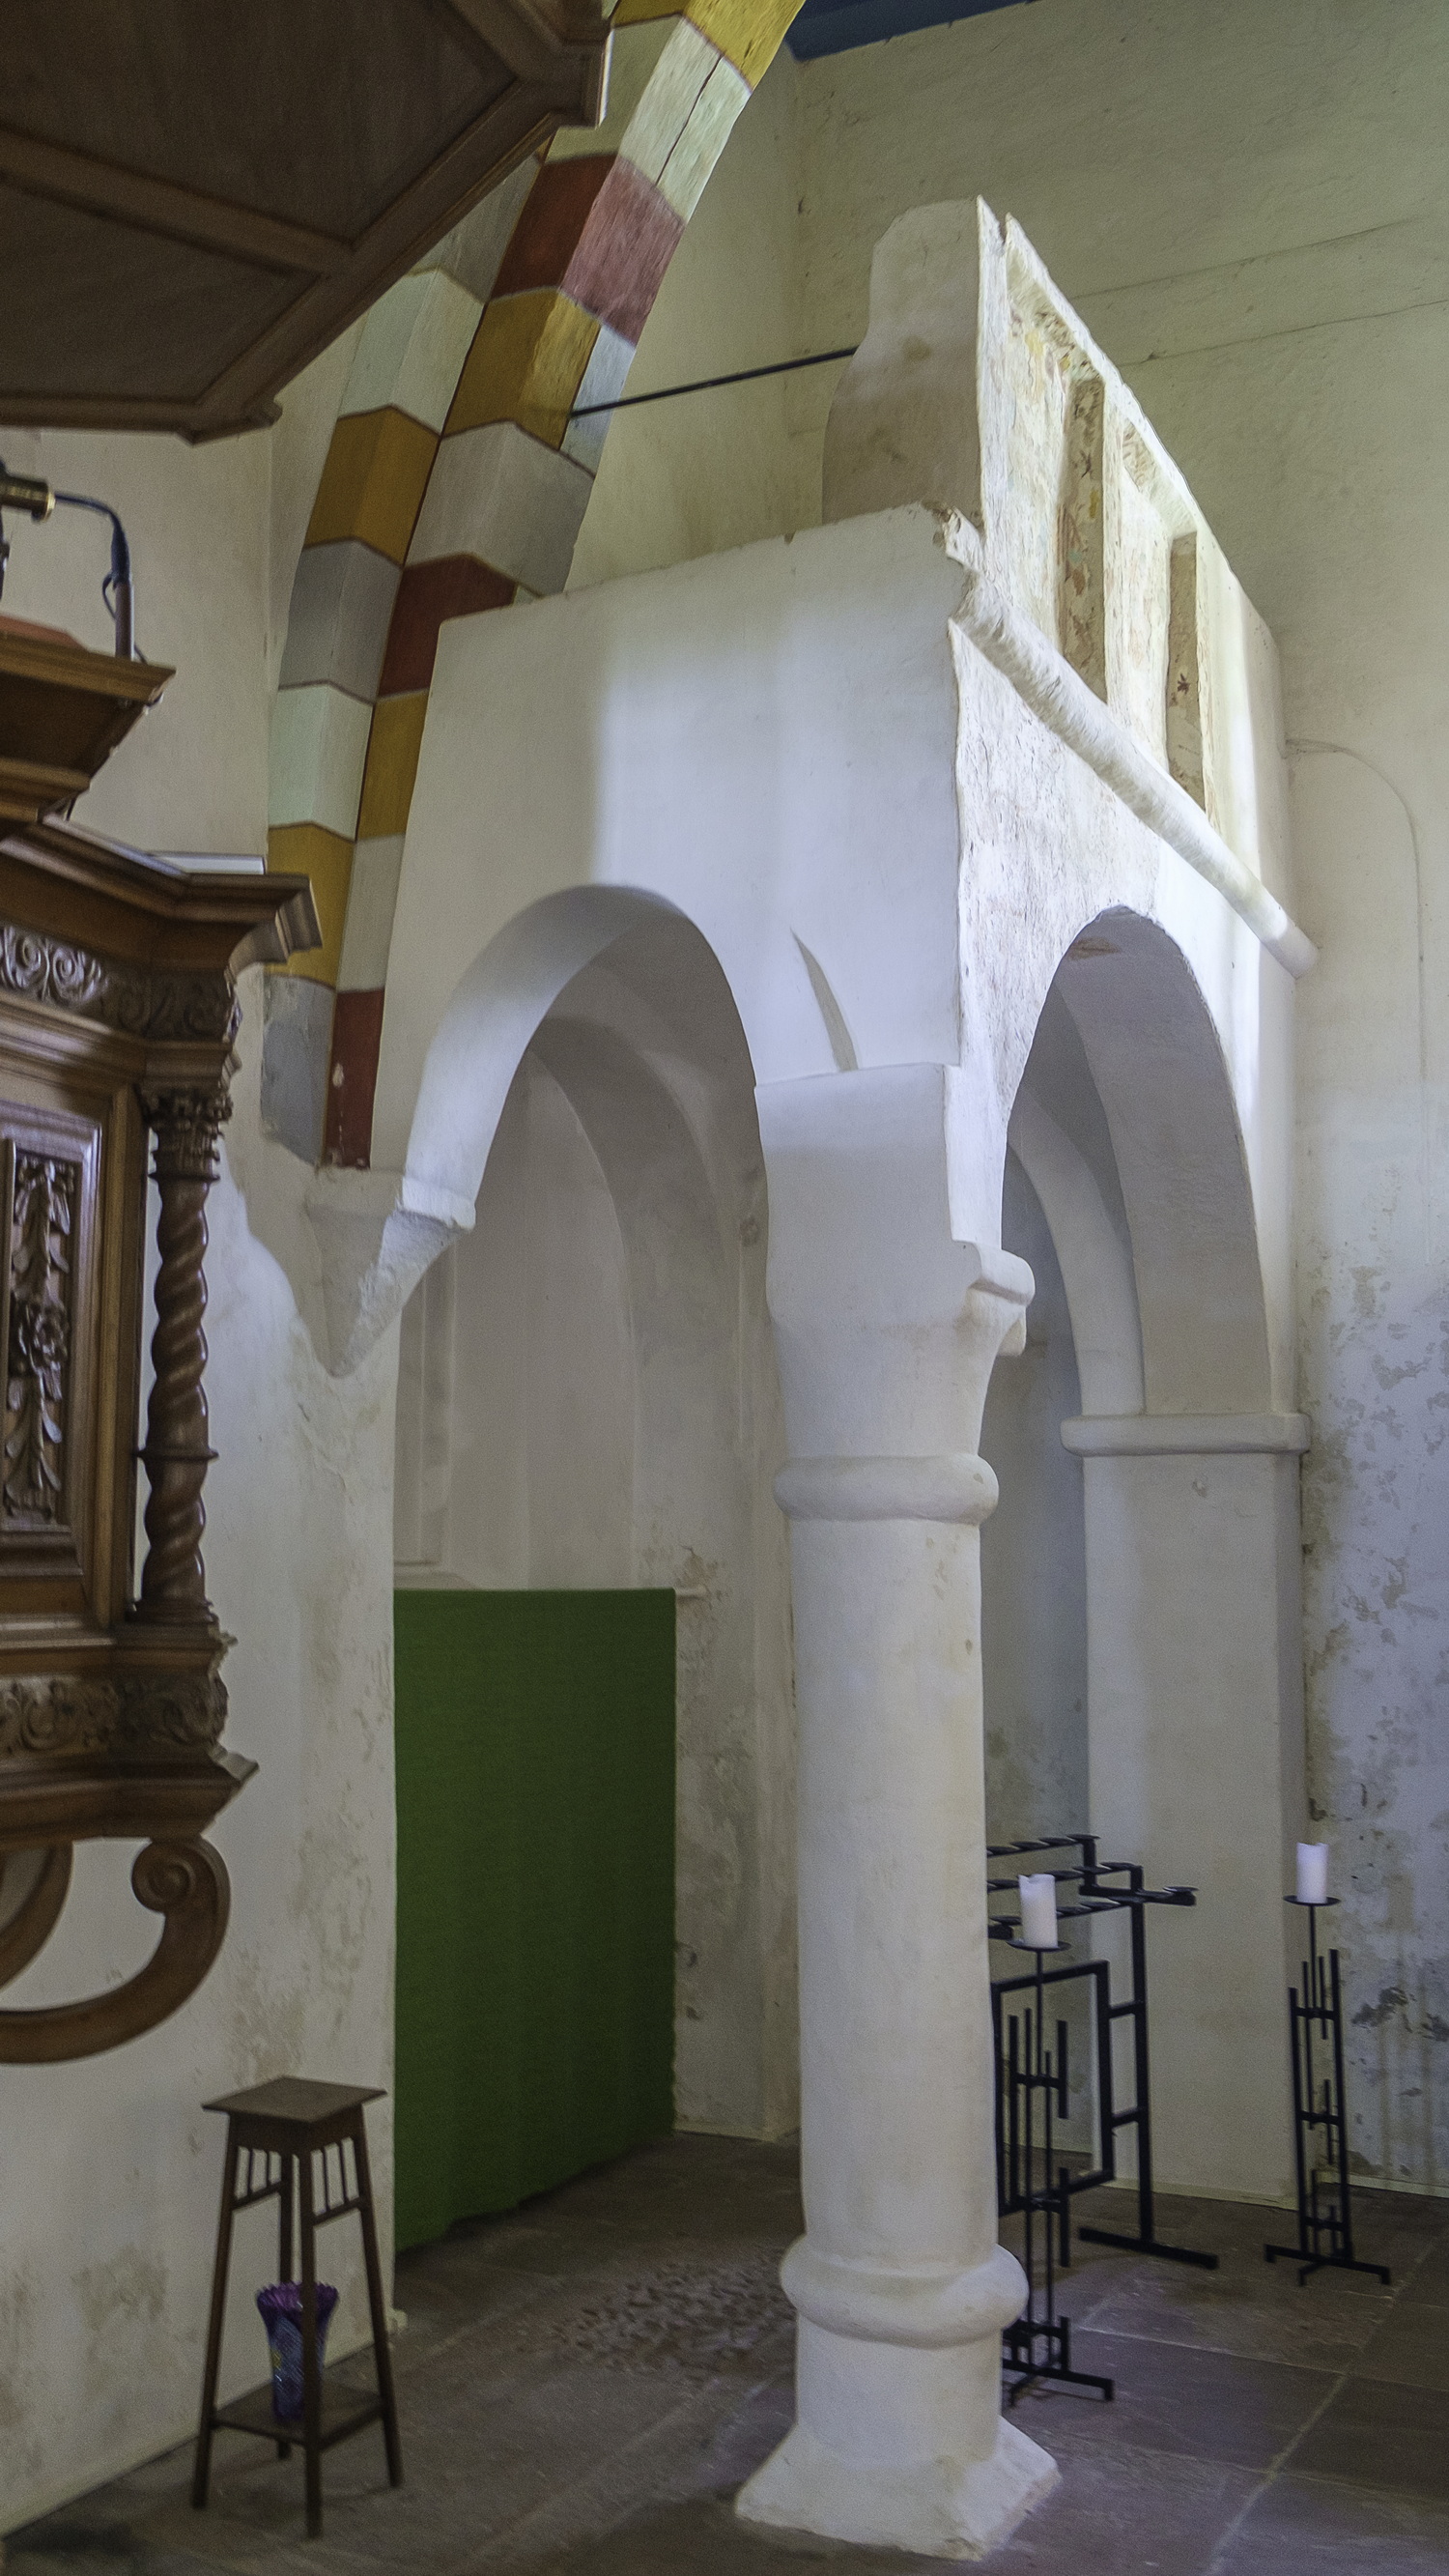 doksaal na restauratie in de Donatuskerk van Leermens, met links de preekstoel. Dit doksaal strekt zich hier dus niet uit van de noordmuur naar de zuidmuur. 